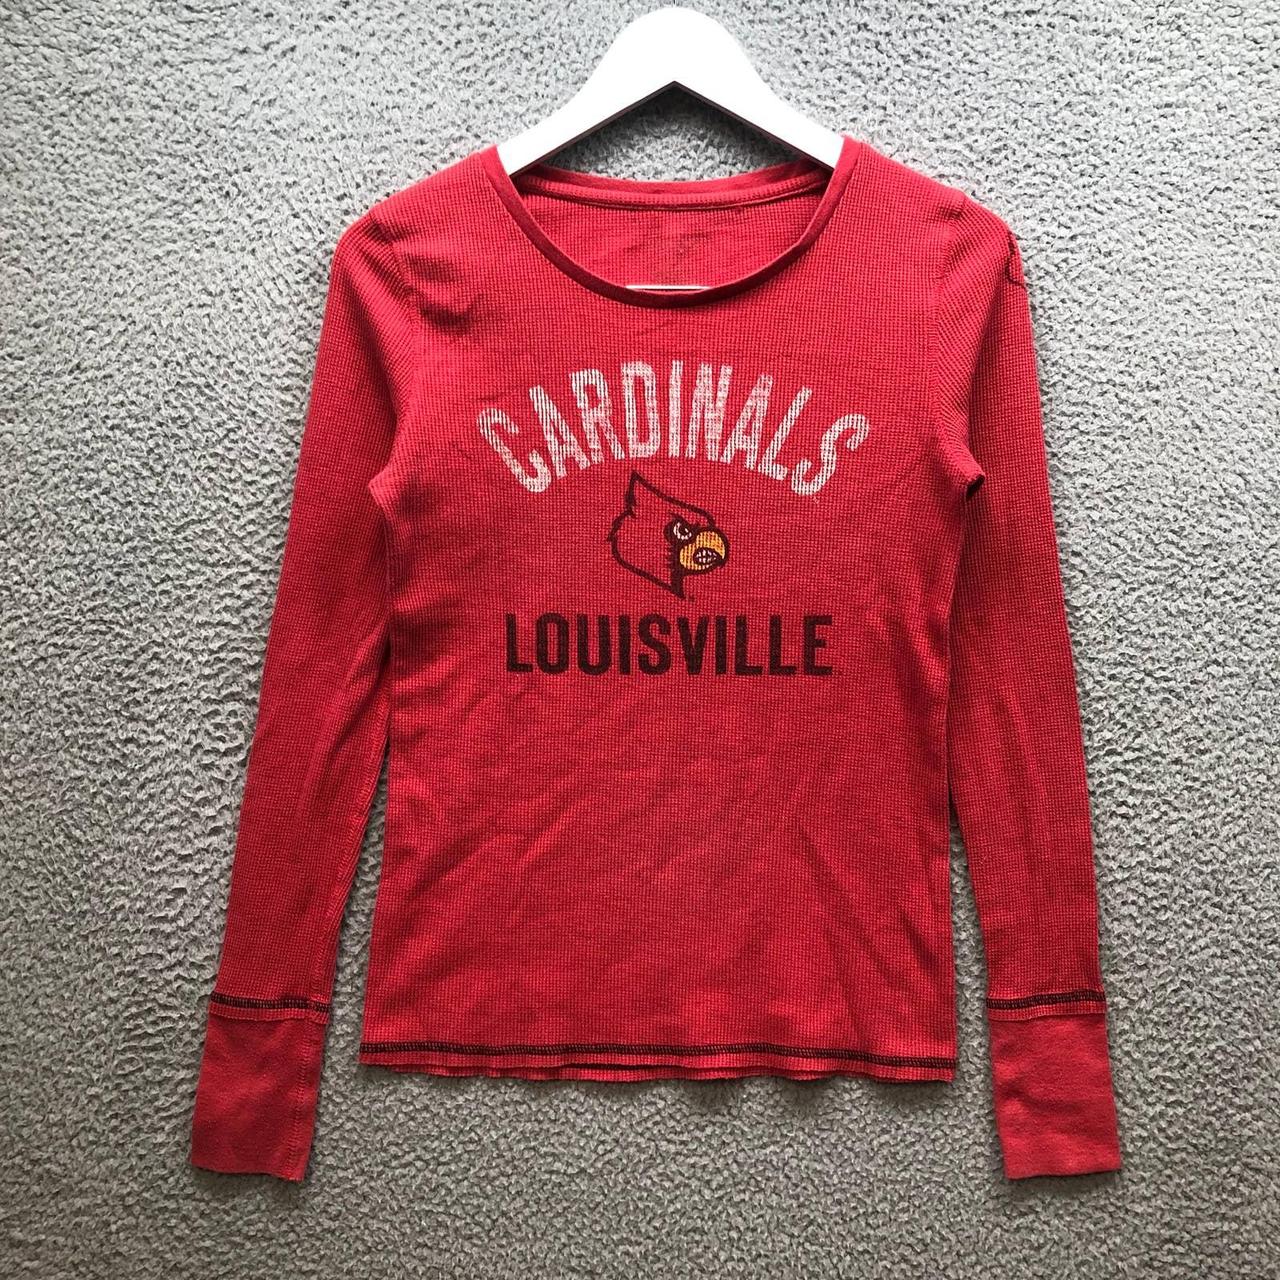 University of Louisville Cardinals T-Shirt Men's - Depop